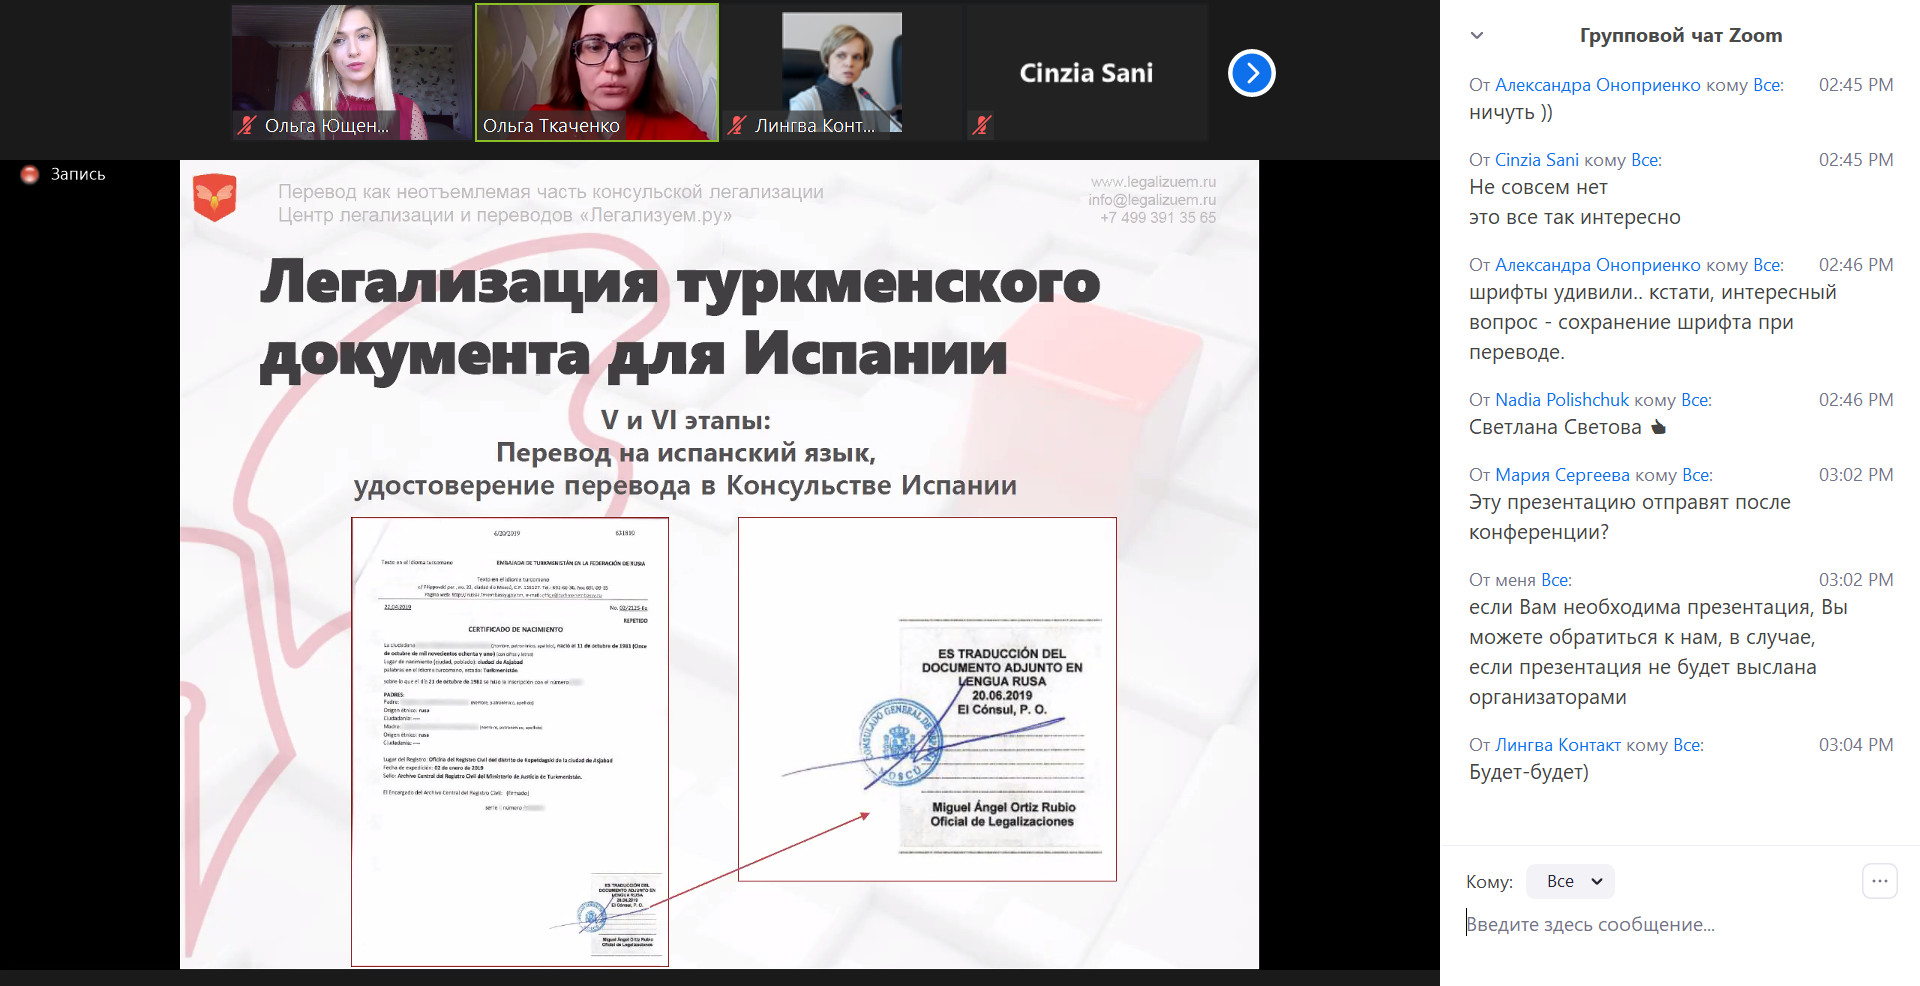 konferentsiya_dlya_perevodchikov_contact_mezhdunarodnaya_praktika